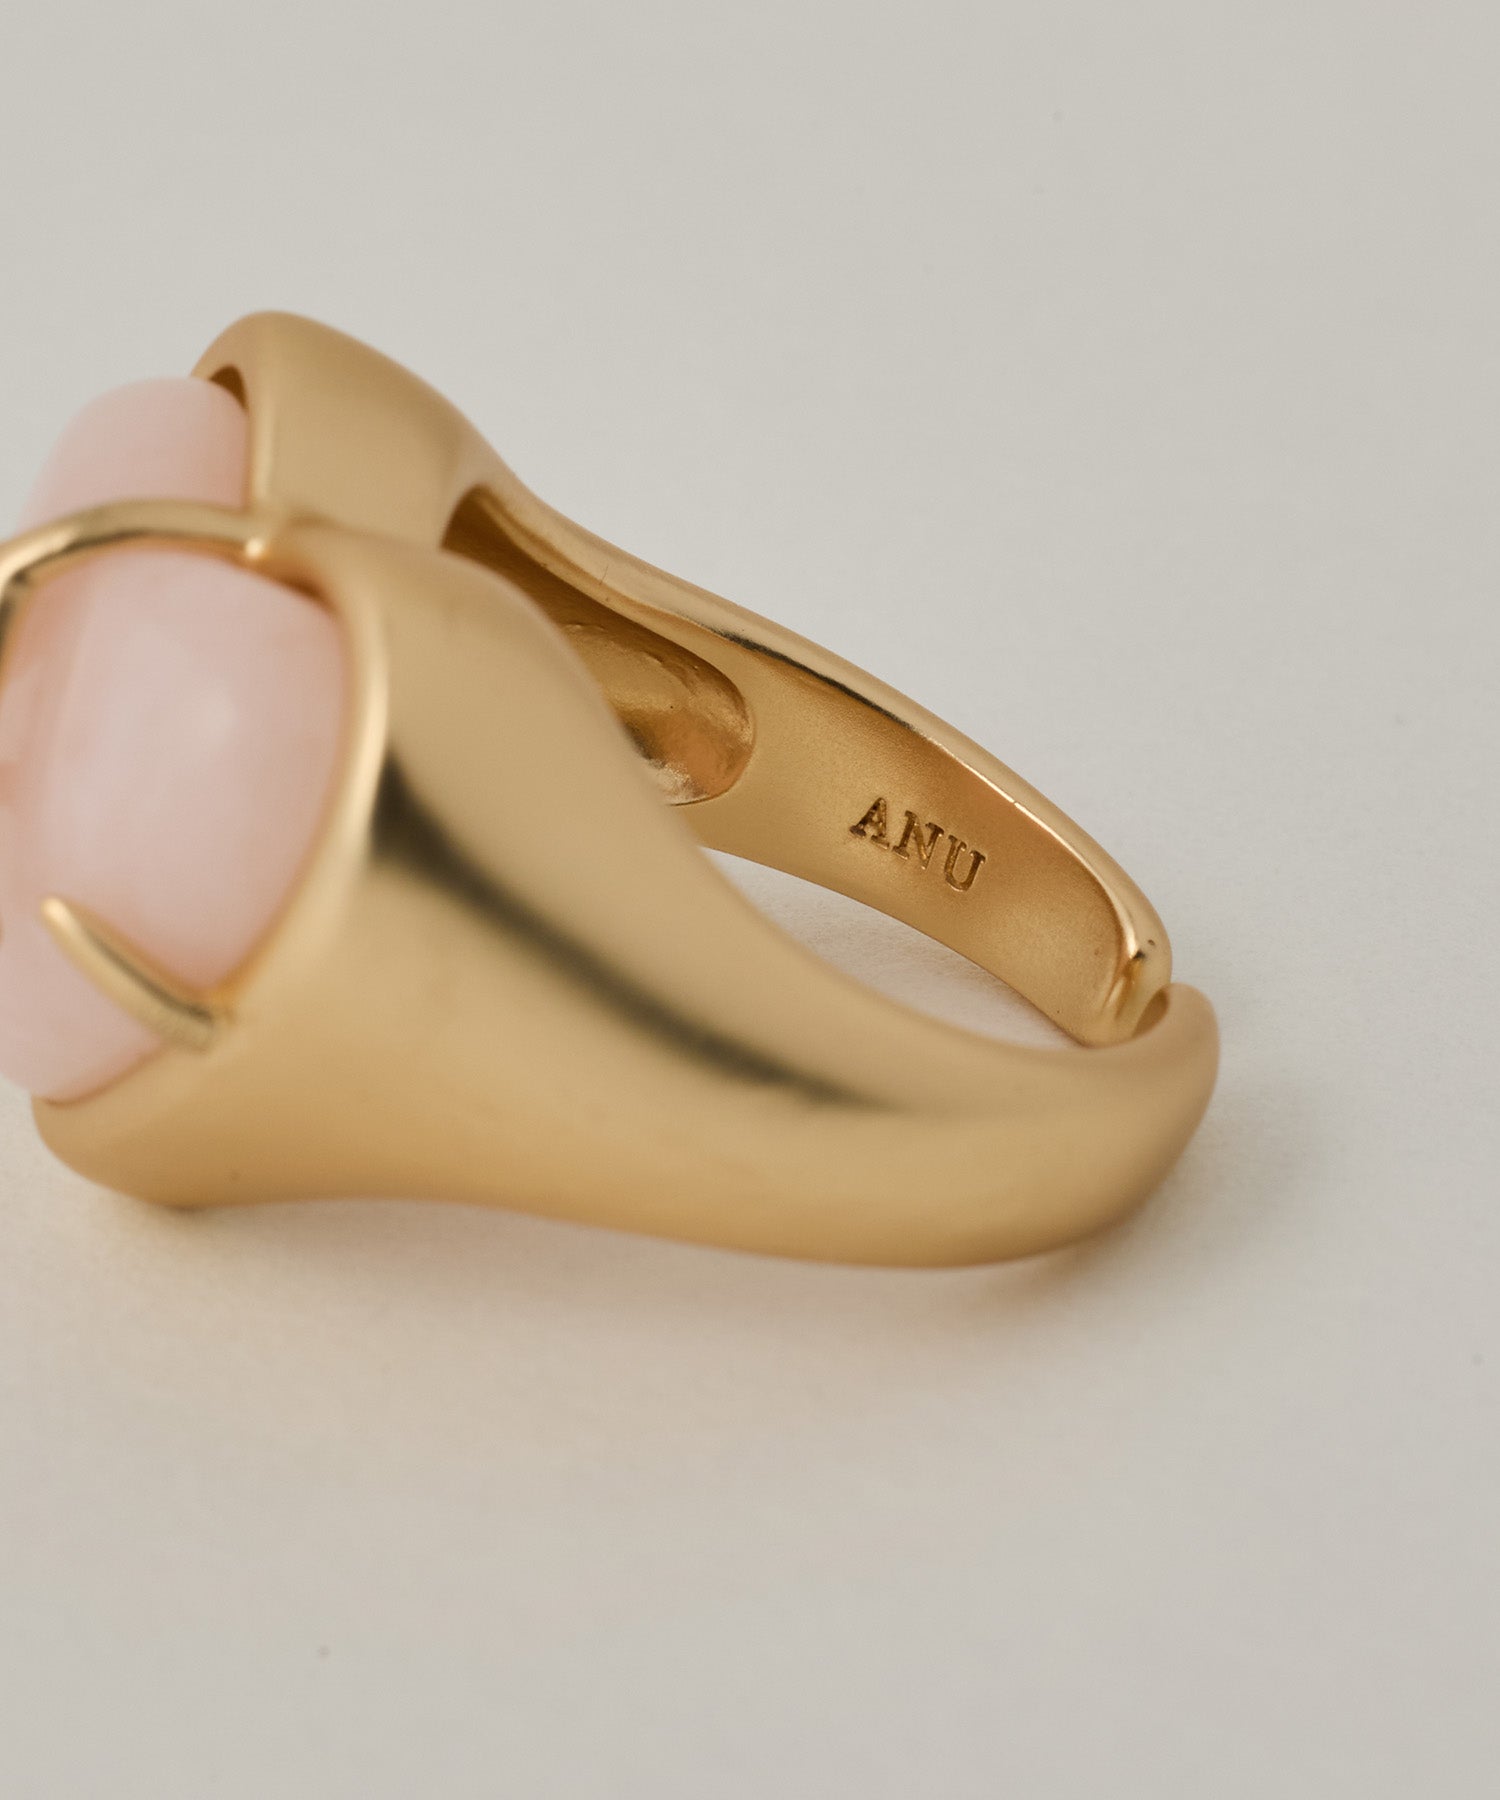 amor's lovely ring